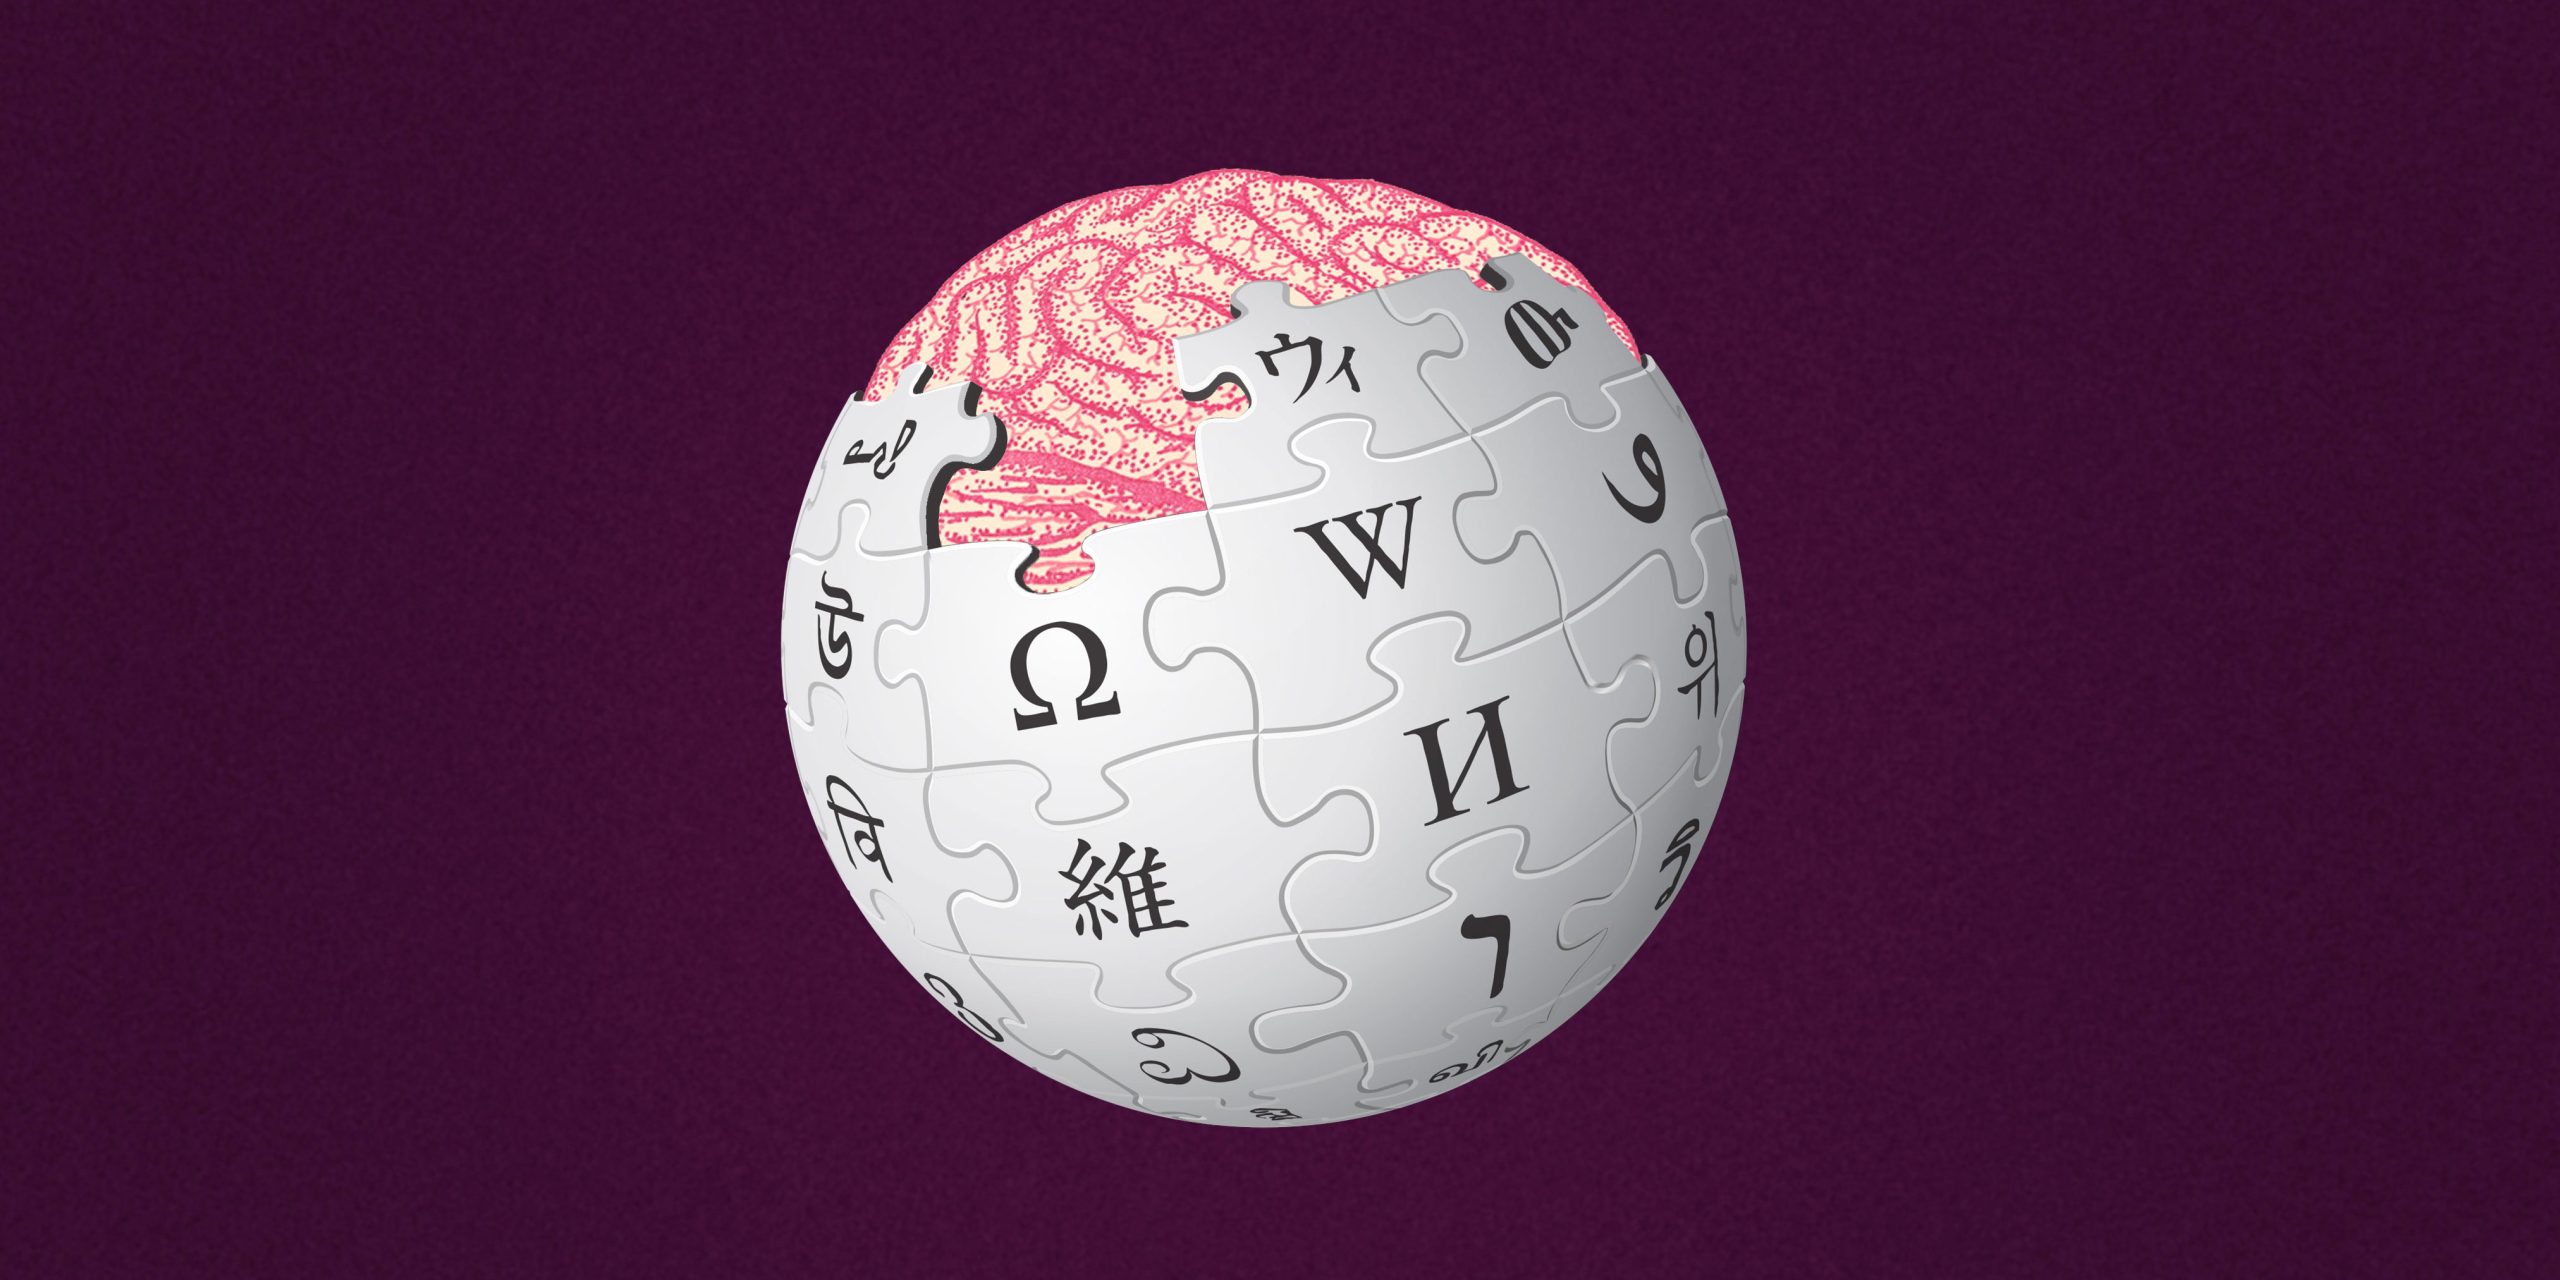 Първата редакция на Wikipedia се продаде за $750,000 като NFT